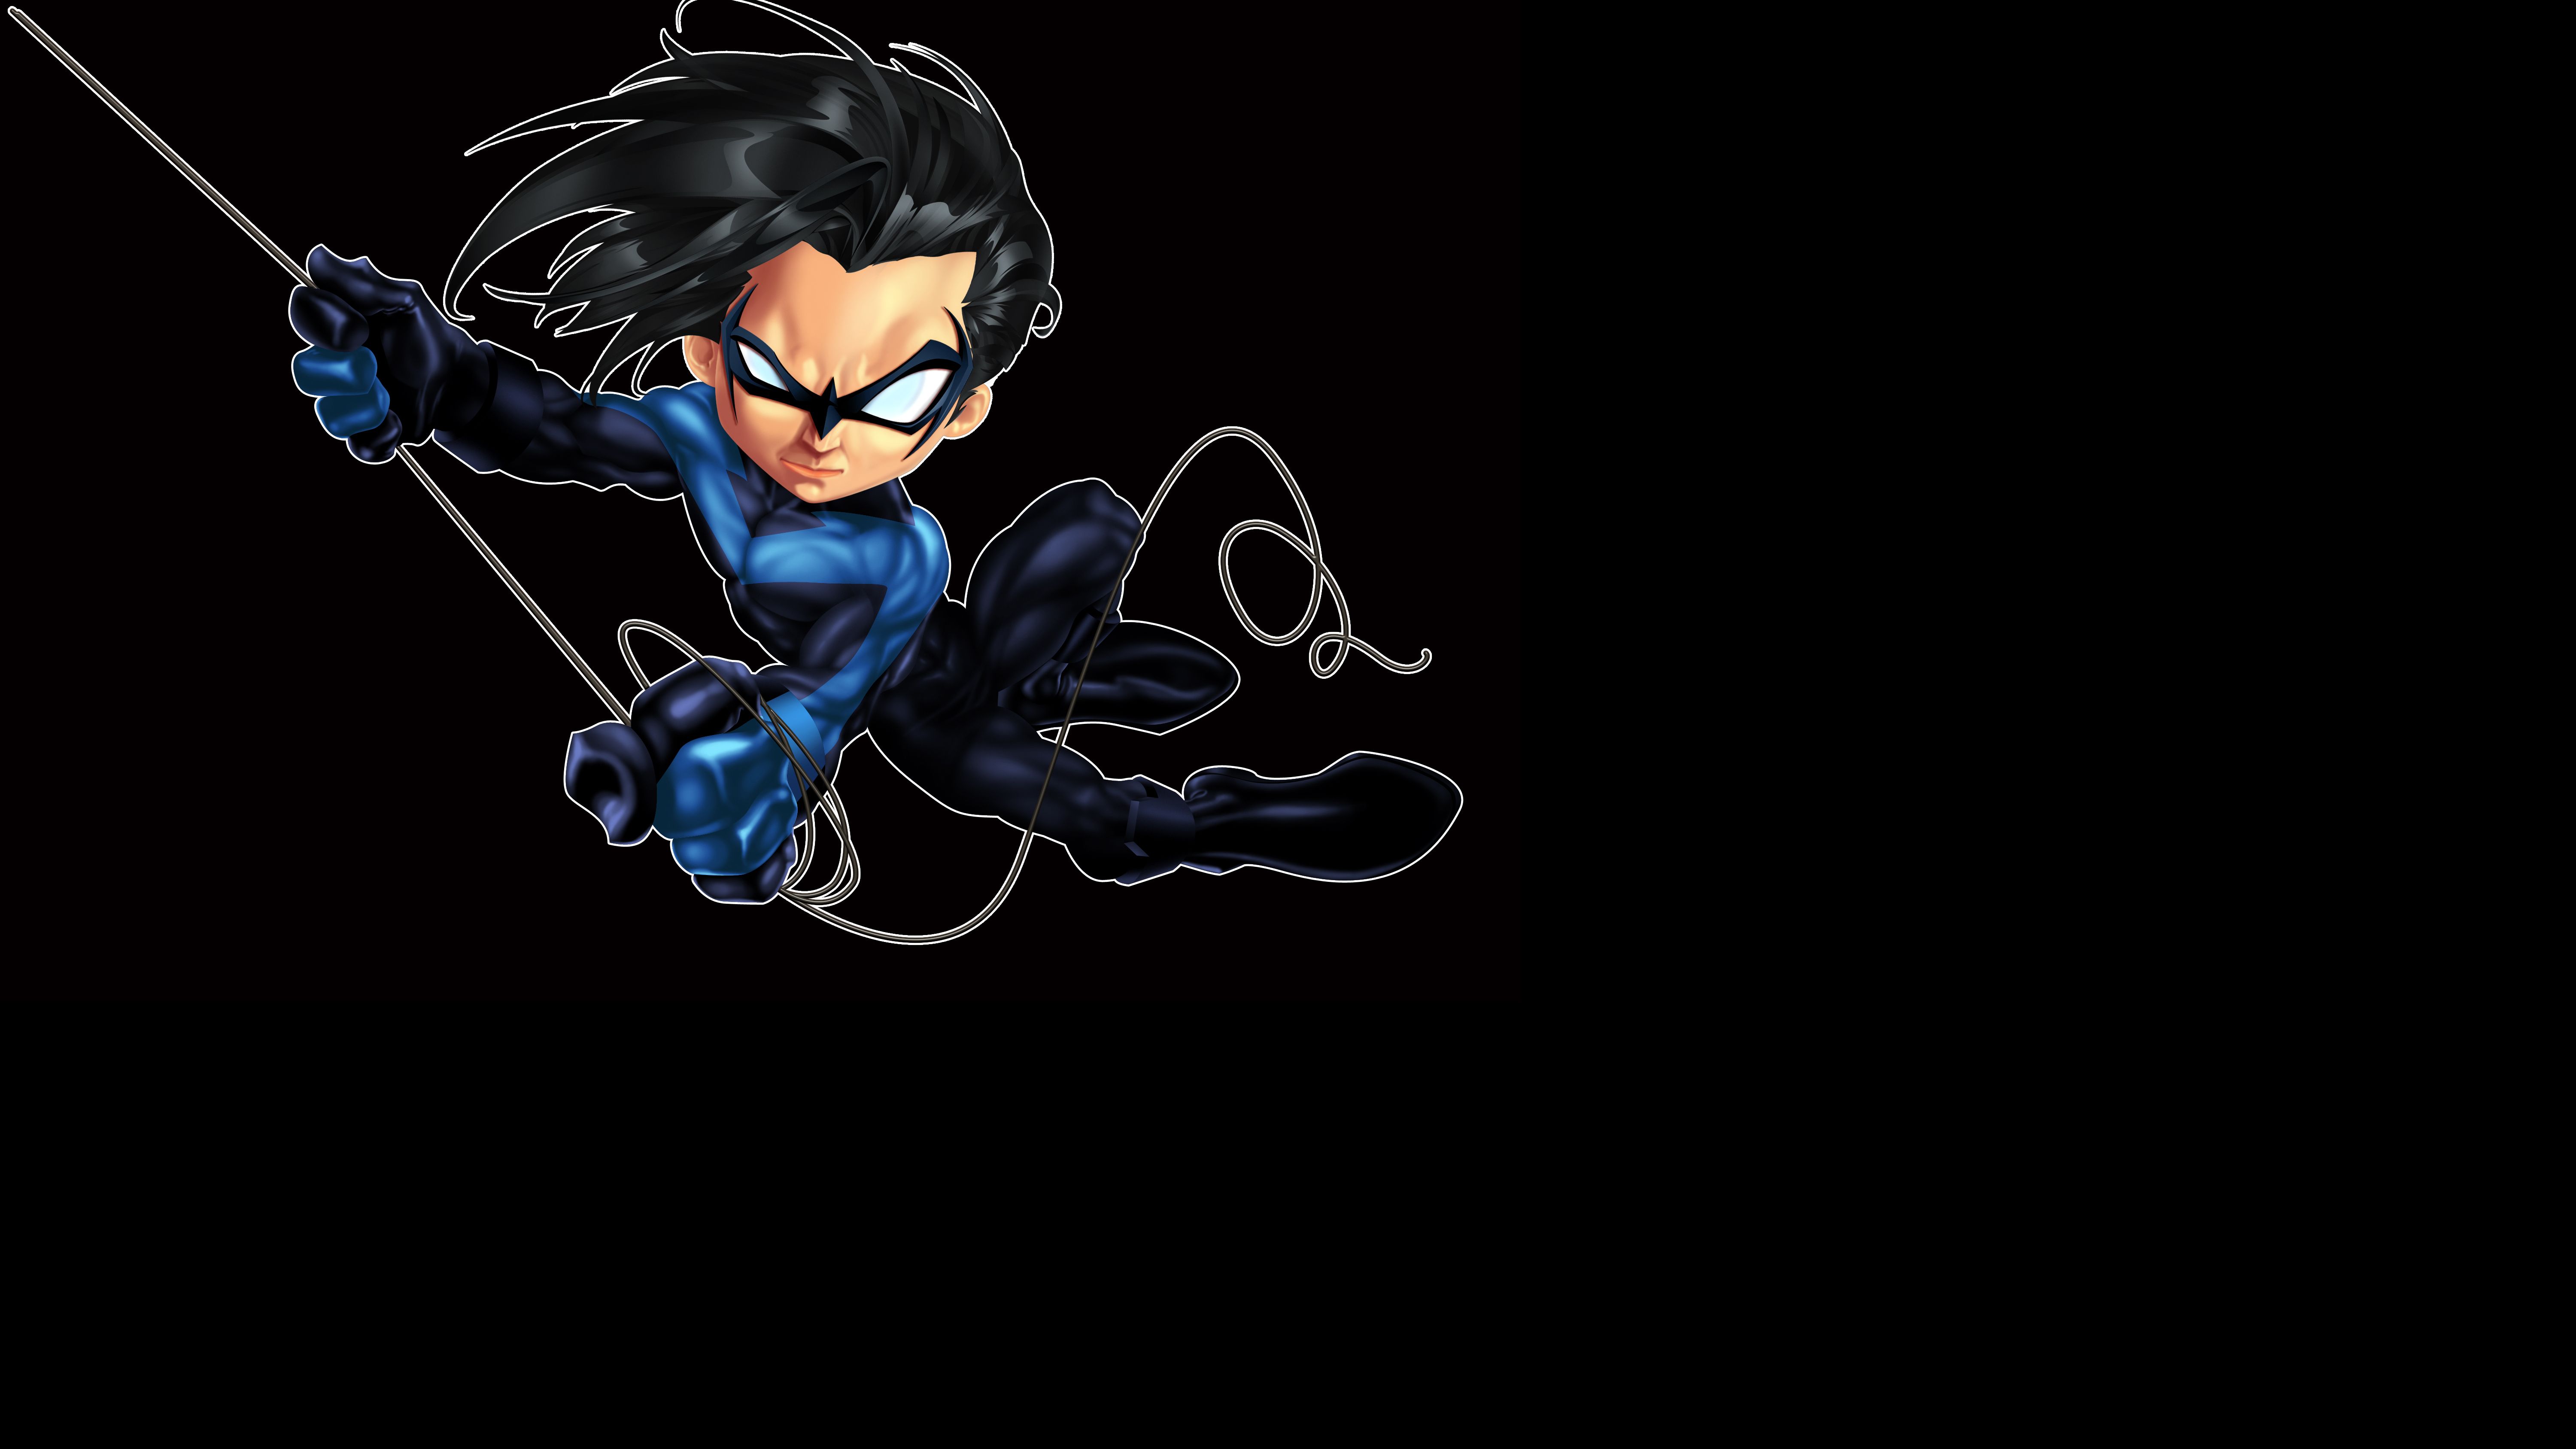 Nightwing Wallpaper Free Nightwing Background